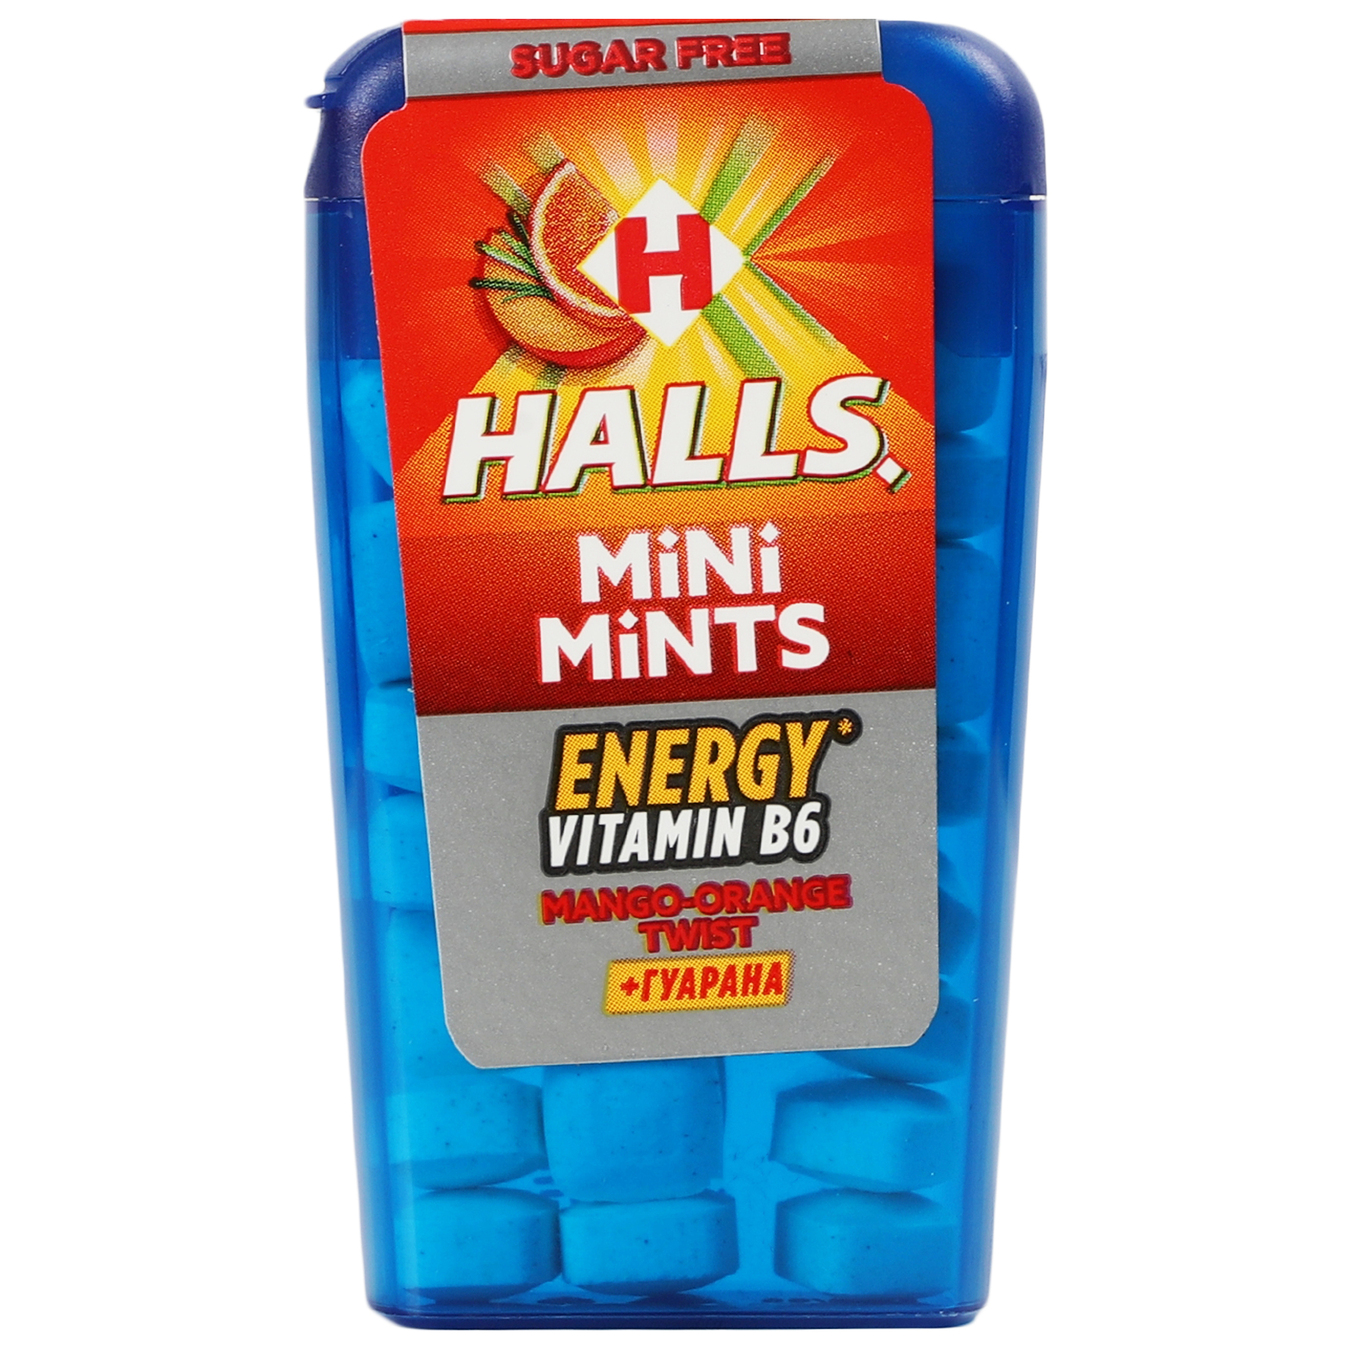 Цукерки Halls Mini Mints Mango-Orange Twist +гуарана без цукру 12.5г